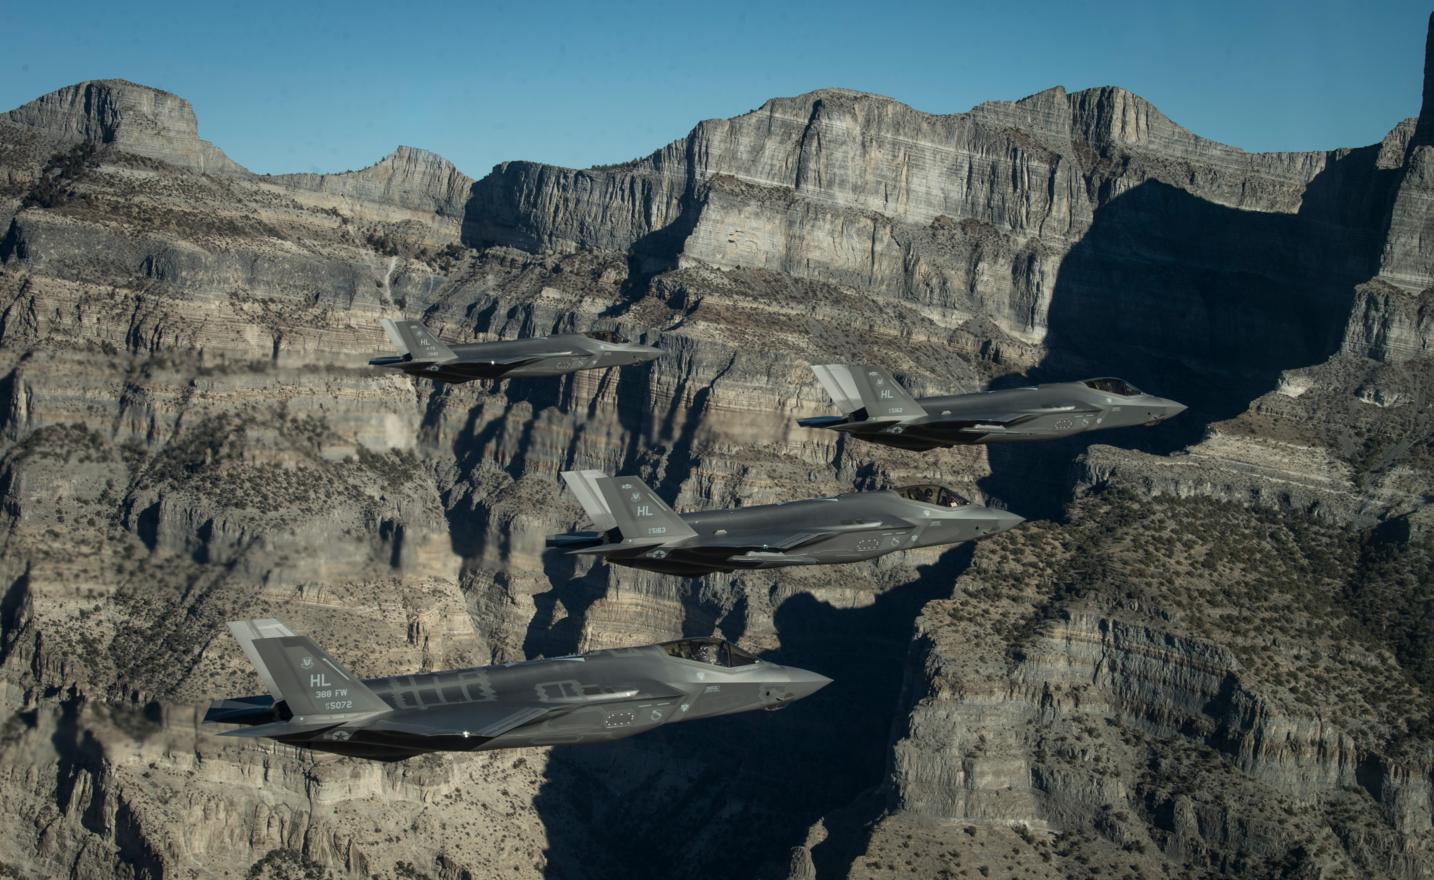 Строевые (боевые) истребители F-35A Lightning II 388-го и 419-го истребительных крыльев, базирующиеся на АБ  Hill,  на учебно-испытательном полигоне Utah во время учения по оценке боевой готовности, фото сделано 19 ноября 2018 года